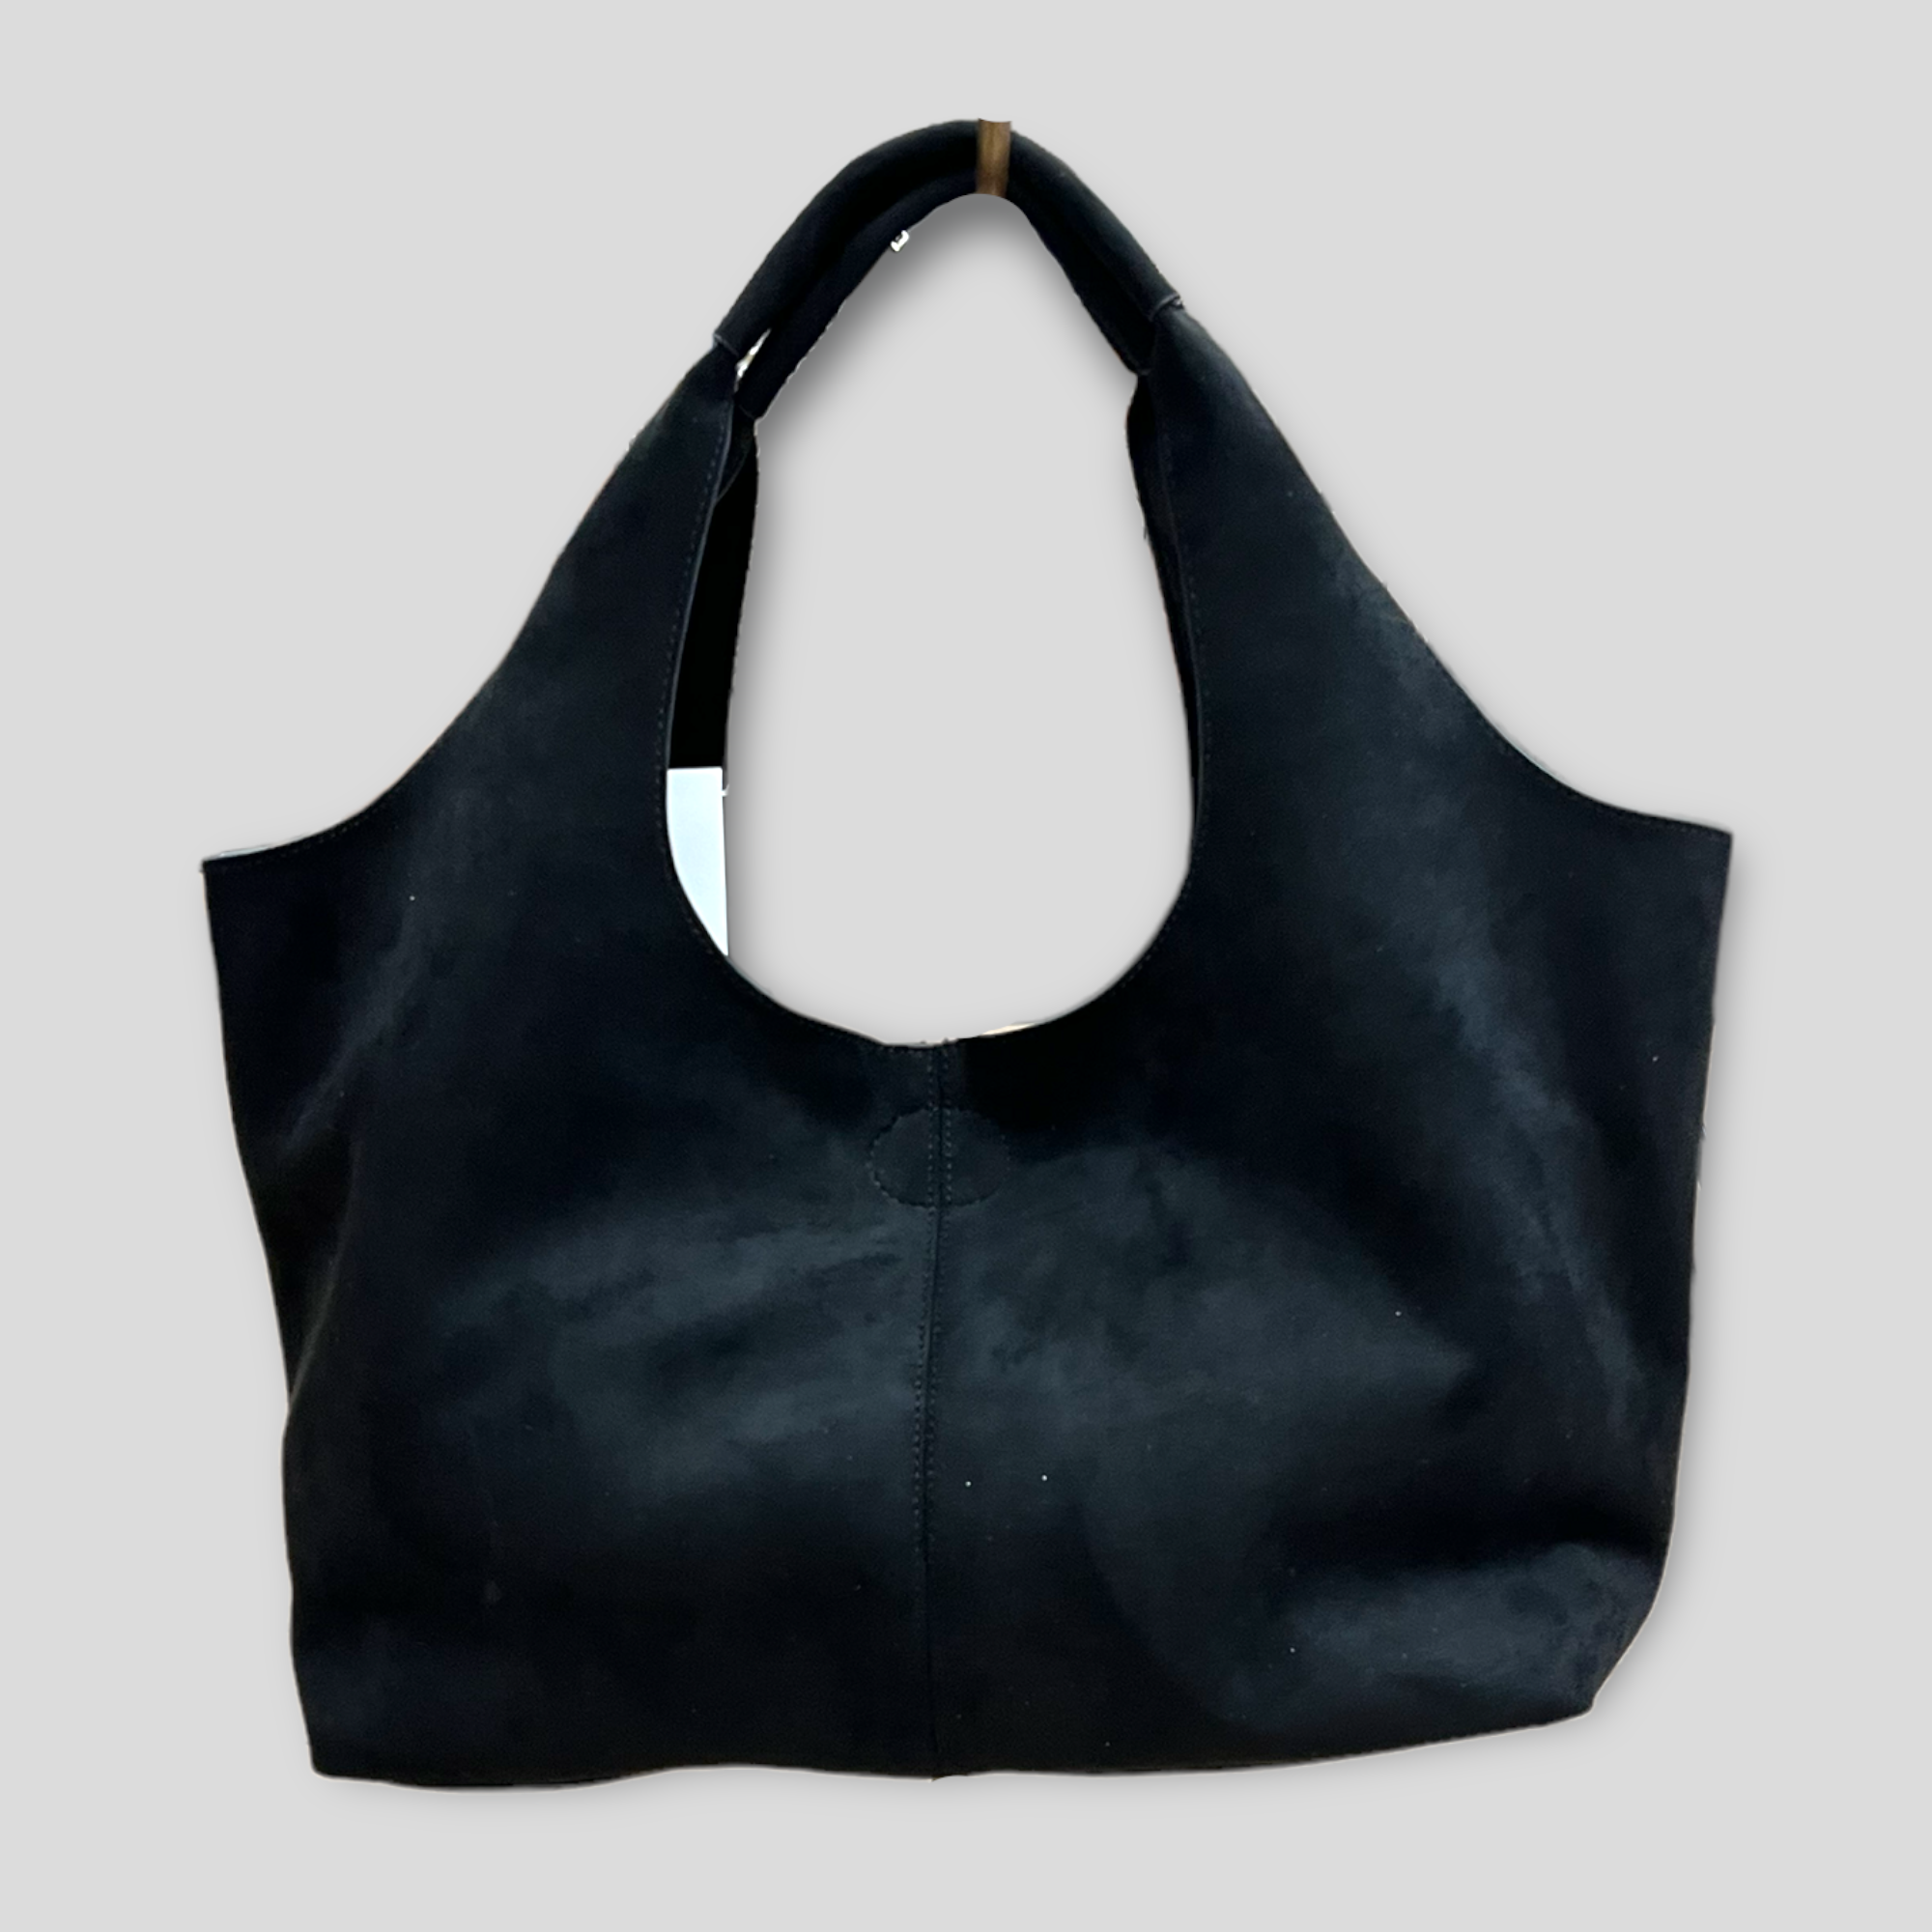 Ahdorned Black Vegan Leather Messenger Bag w/ Camouflage Strap - Her Hide  Out